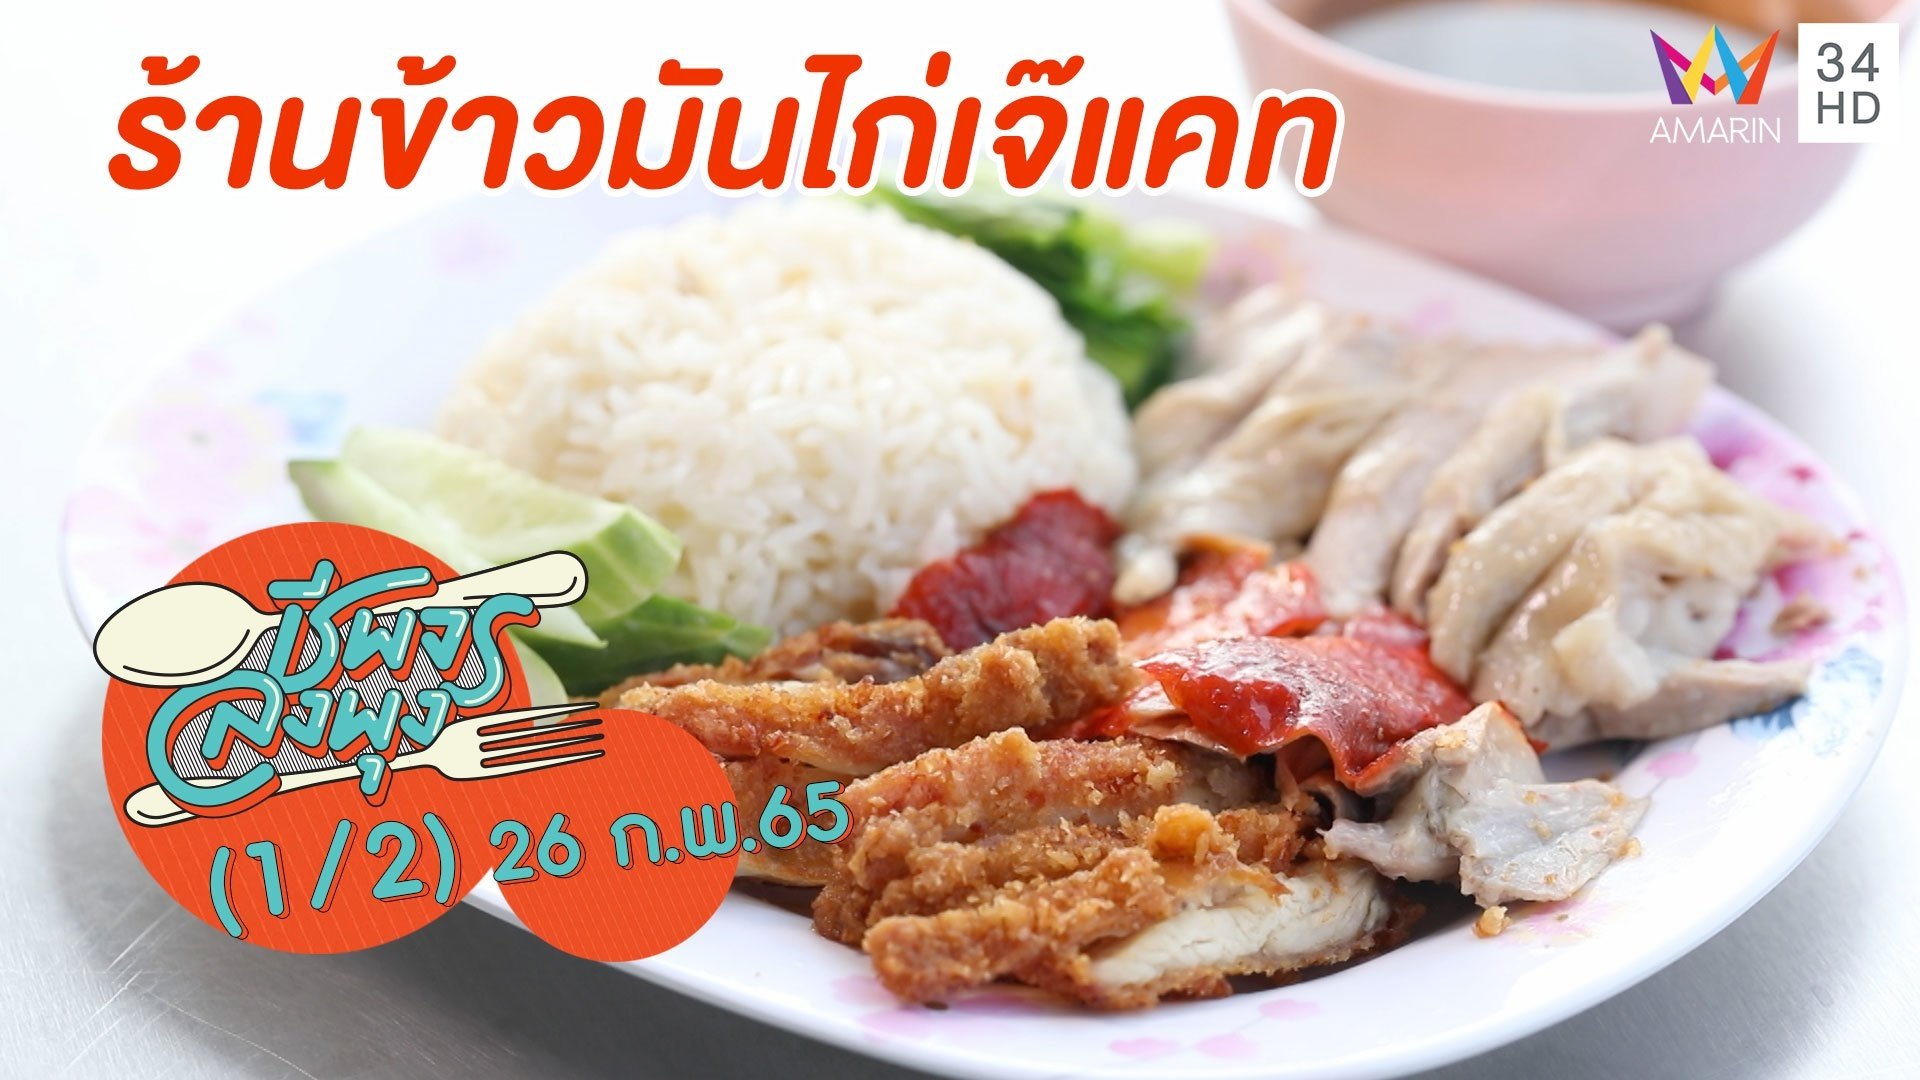 สุดฟิน! ข้าวมันไก่ น้ำซุปผักกาดดอง @ ร้านข้าวมันไก่เจ๊แคท | ชีพจรลงพุง | 26 ก.พ. 65 (1/2) | AMARIN TVHD34